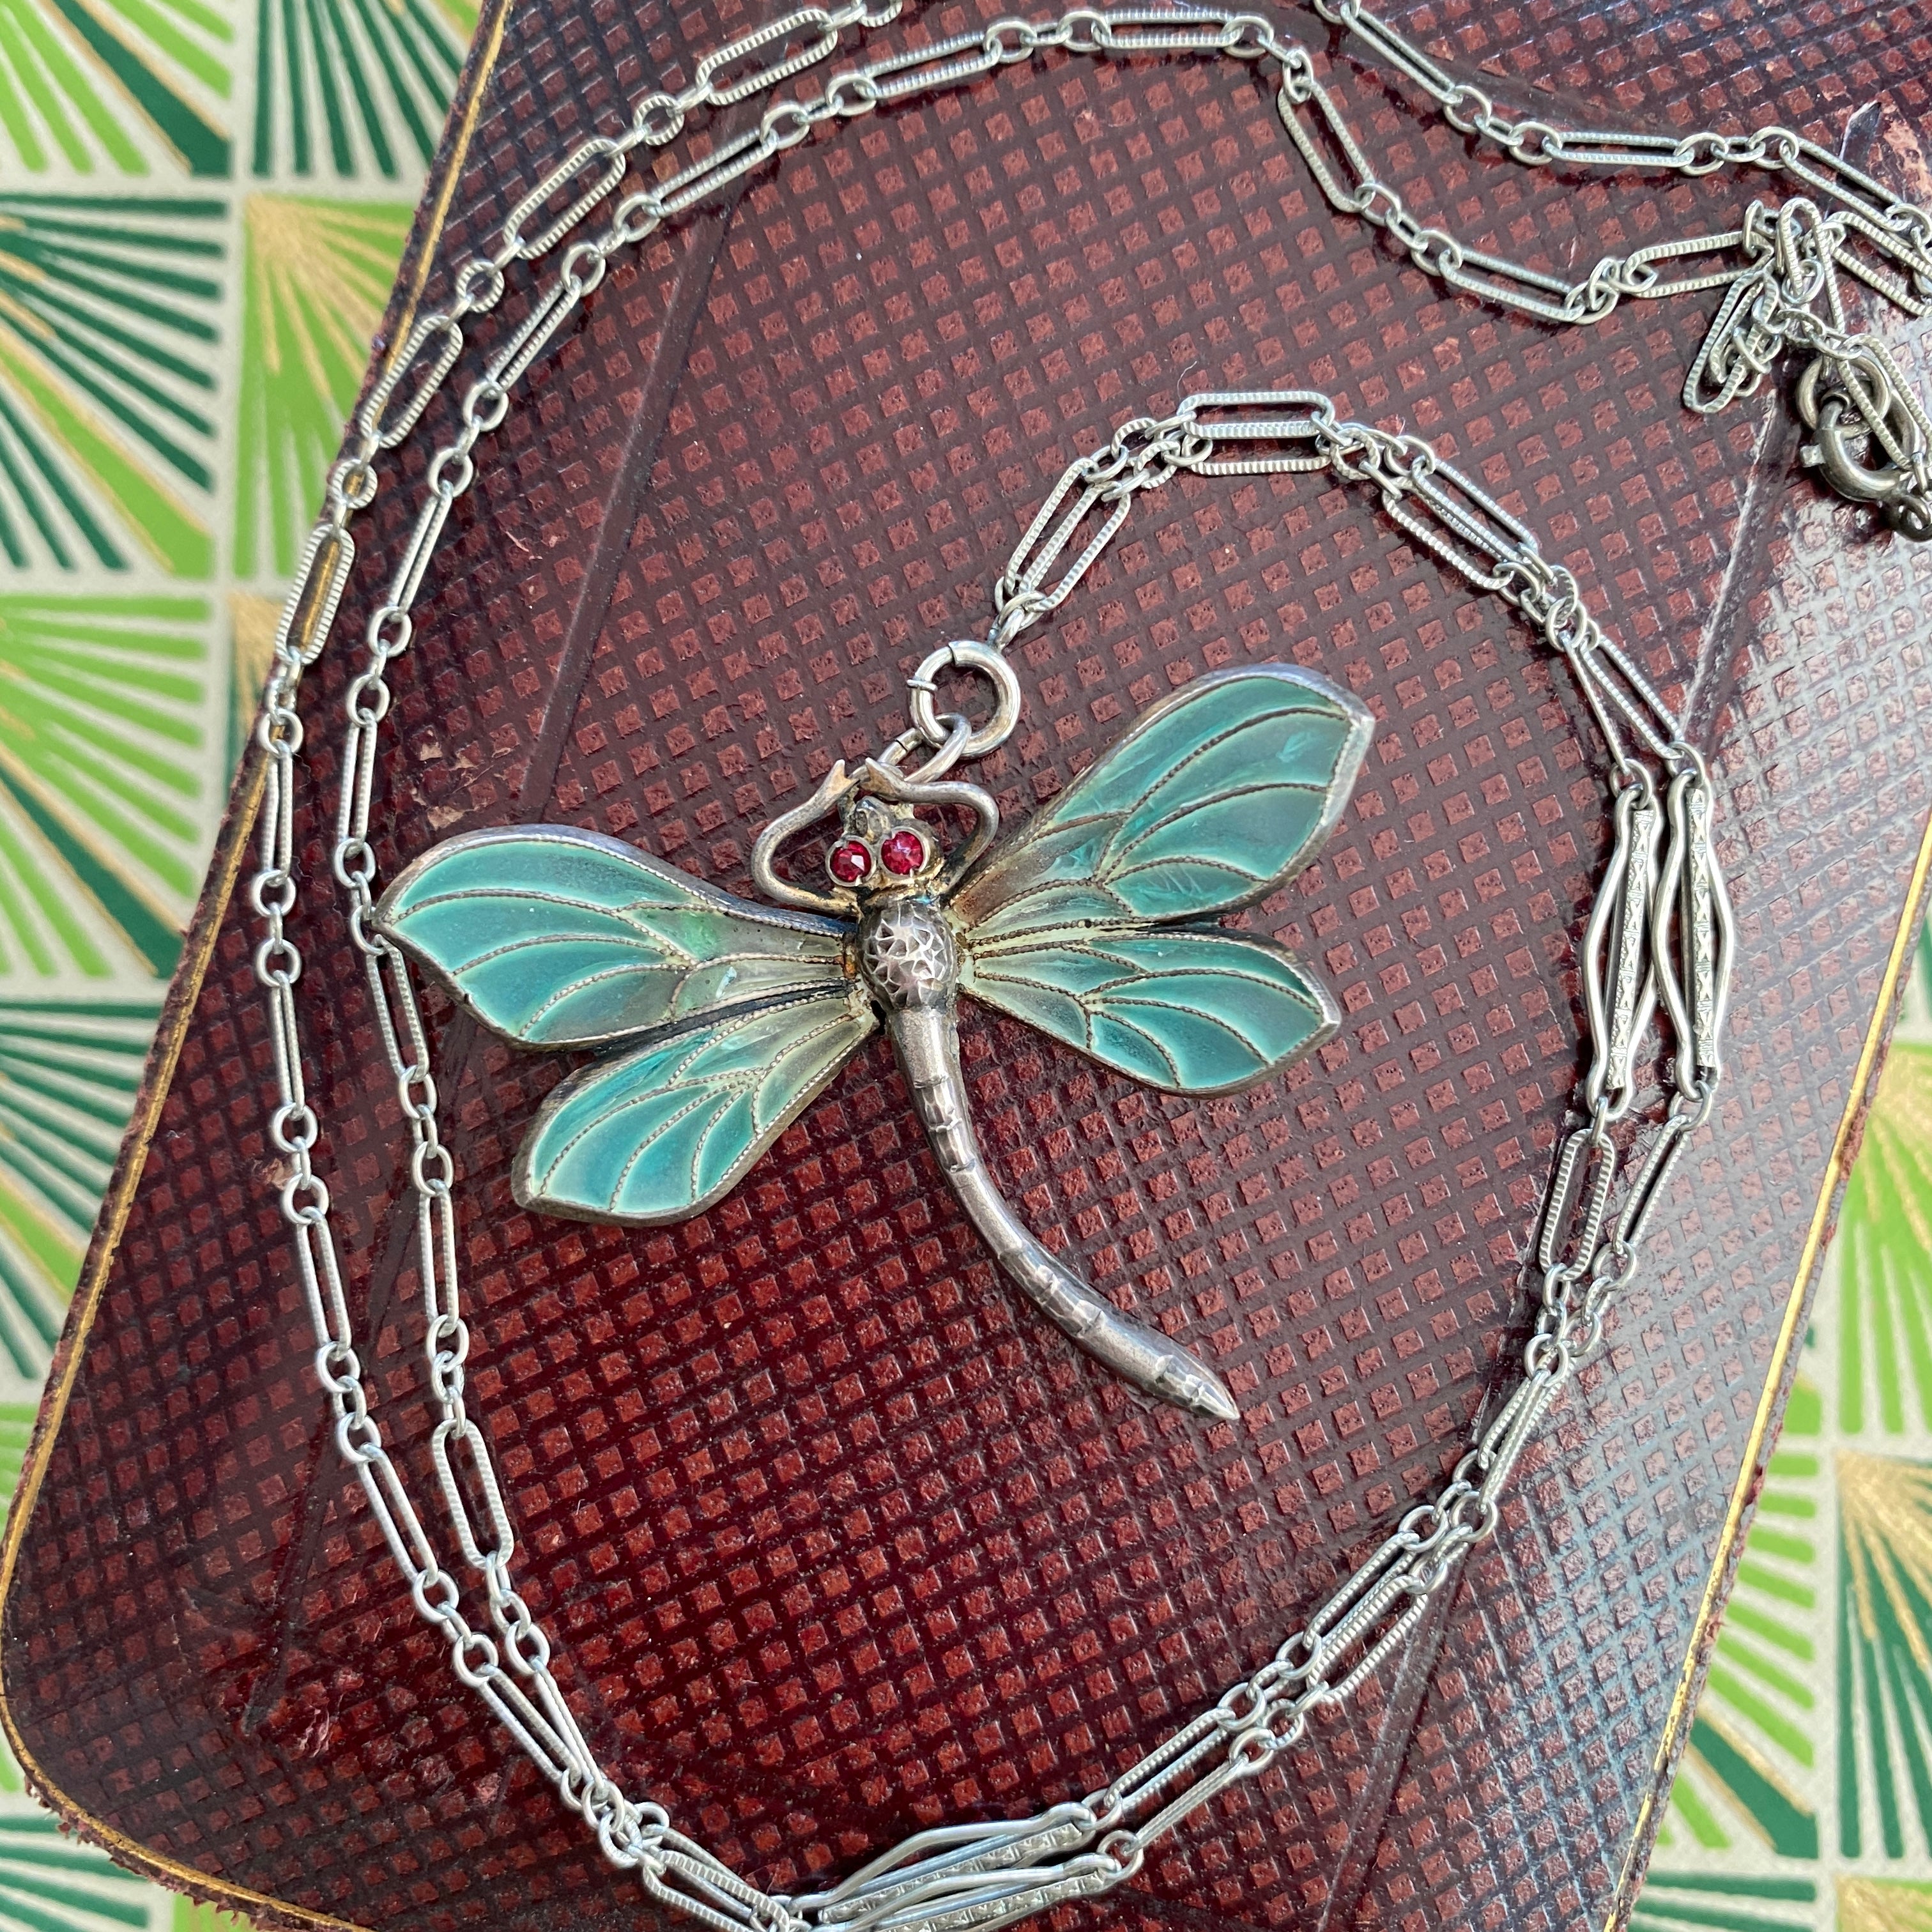 Détails :
Collier pendentif libellule Plique-a-Jour Art Nouveau en argent sterling dans de belles nuances de bleu et de vert avec de petits yeux rouges brillants - peut-être un rubis ou peut-être de la pâte, non testé. La plique-a-jour est un